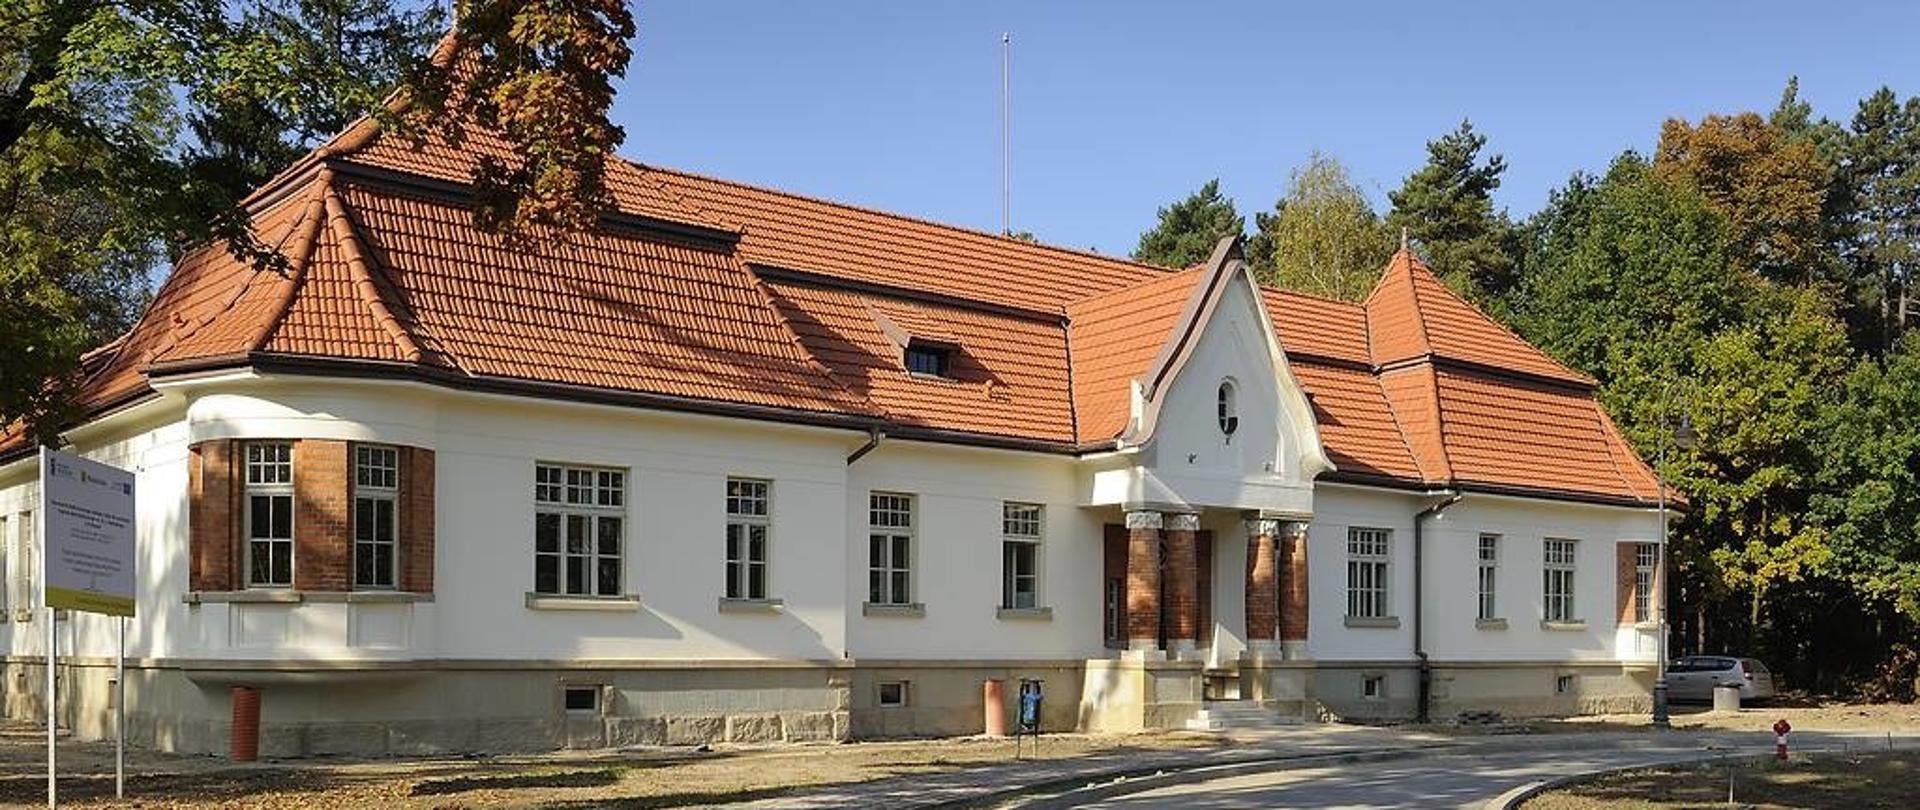 szpital kliniczny im. dr. j. babińskiego w Krakowie